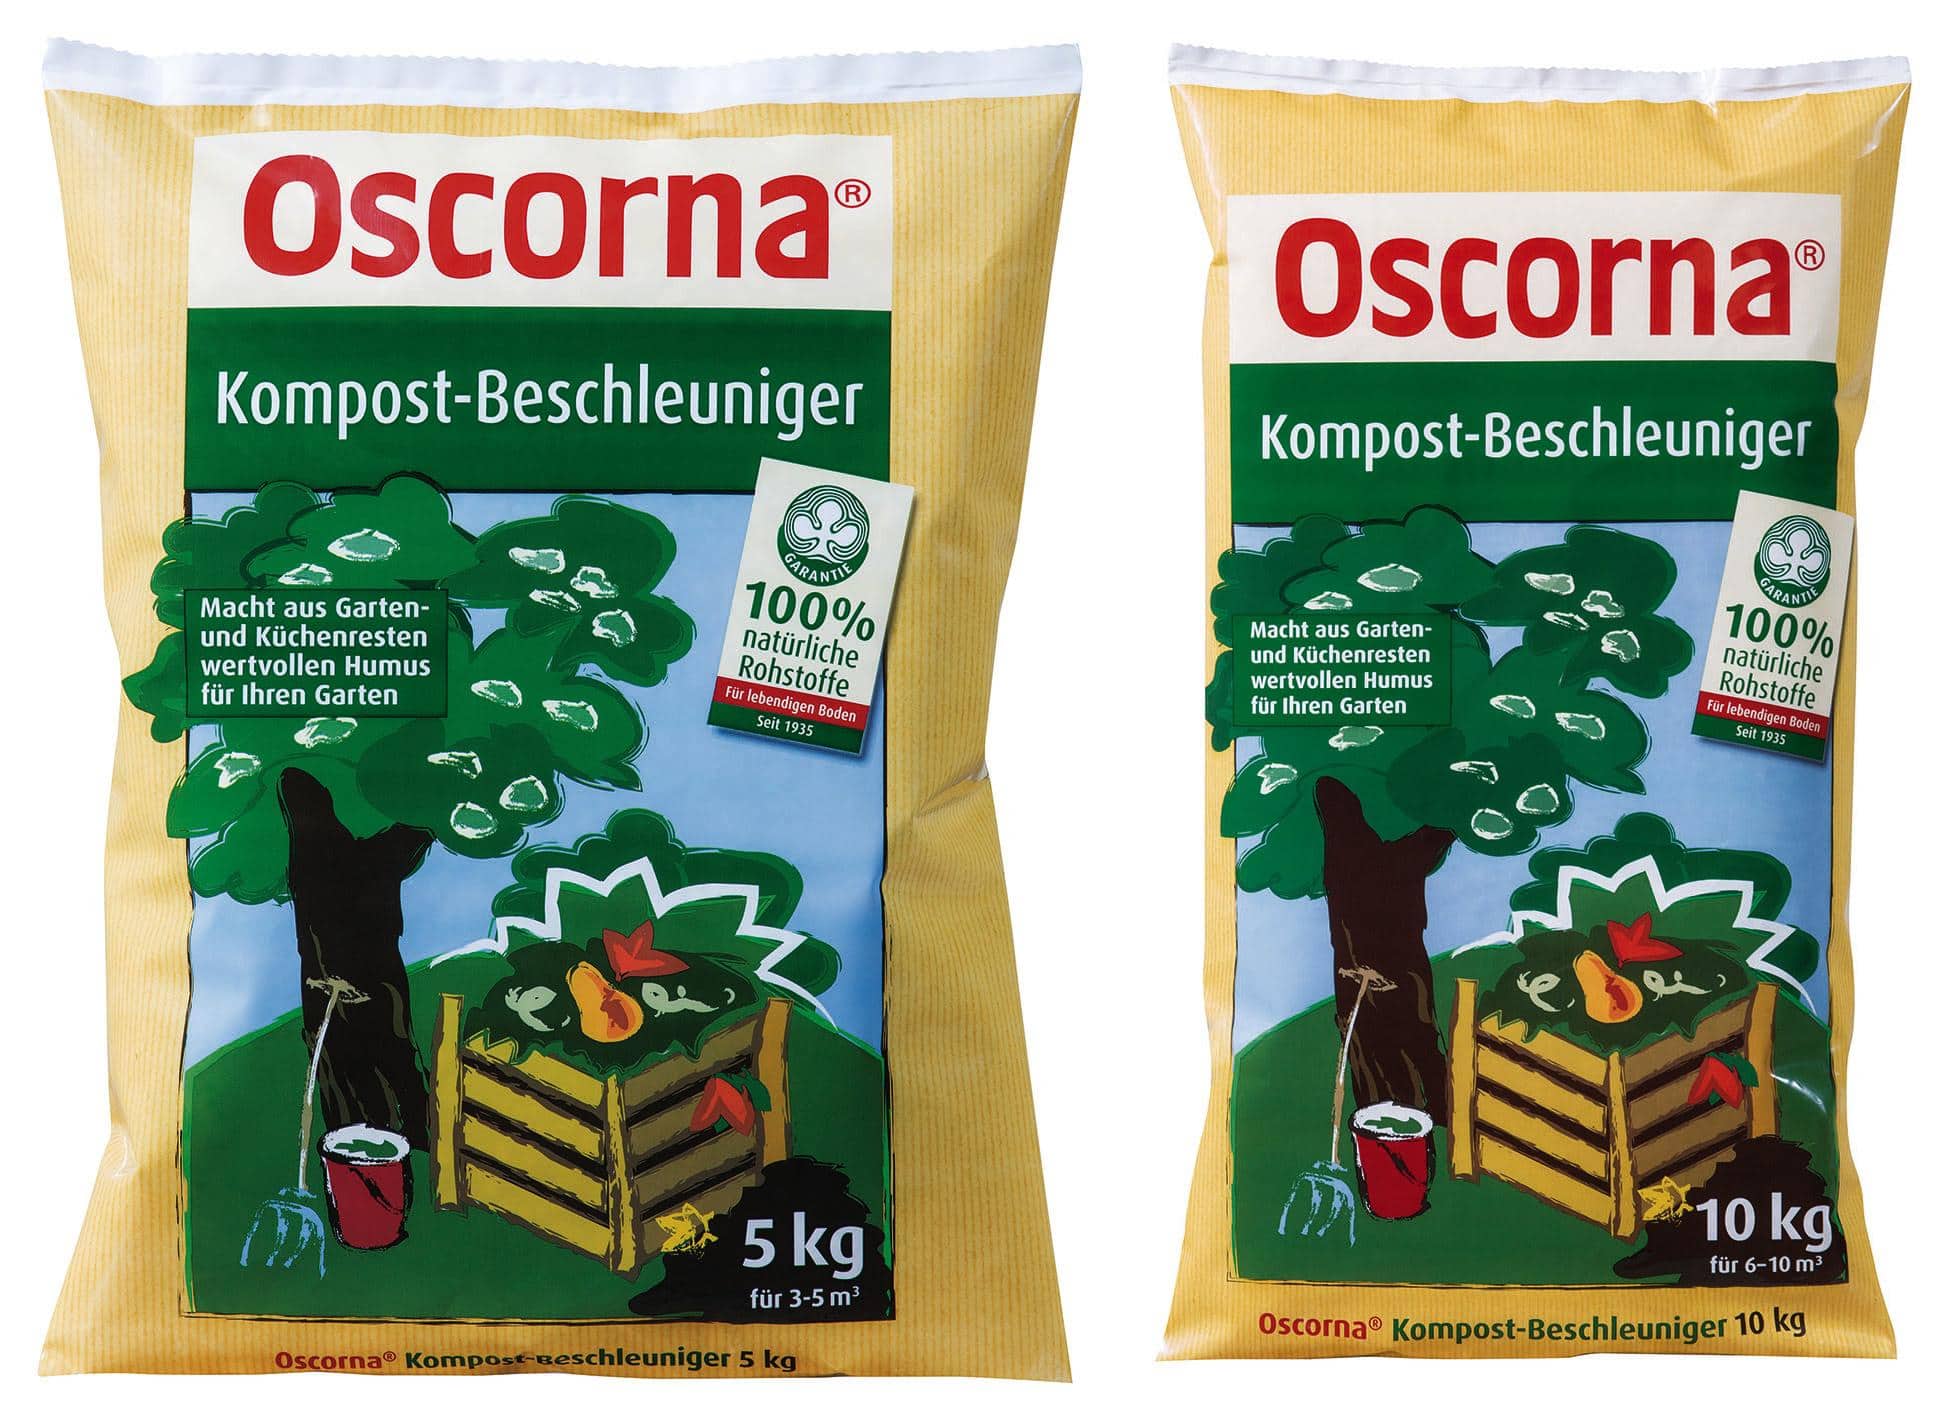 Oscorna Kompost-Beschleuniger, 10 kg